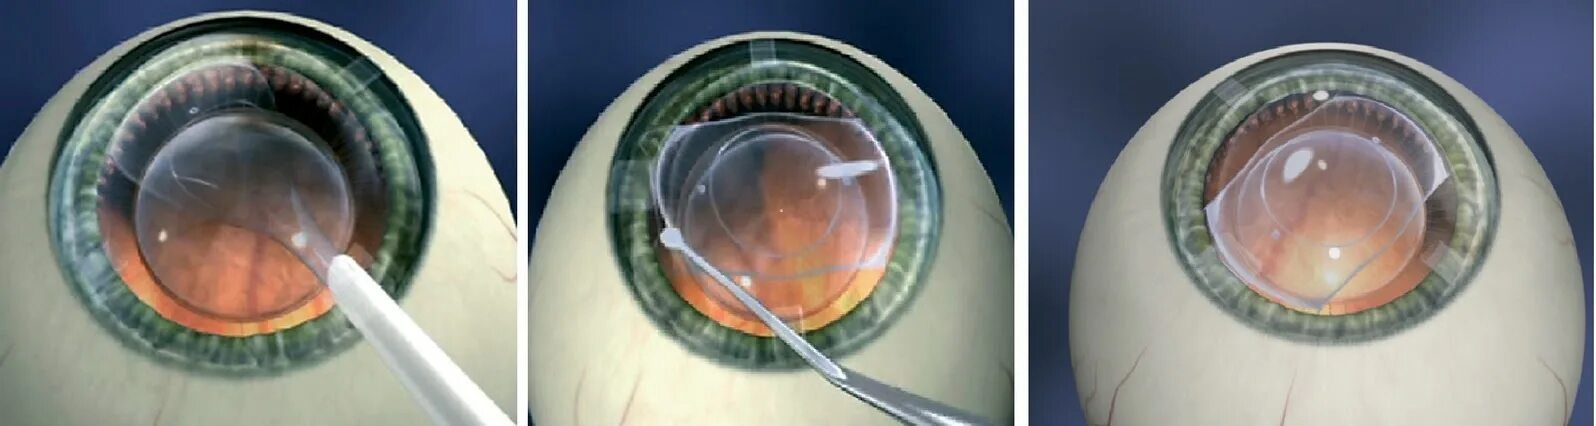 Воздух через глаз. Имплантация факичных интраокулярных линз. Факичные интраокулярные линзы (ИОЛ)..